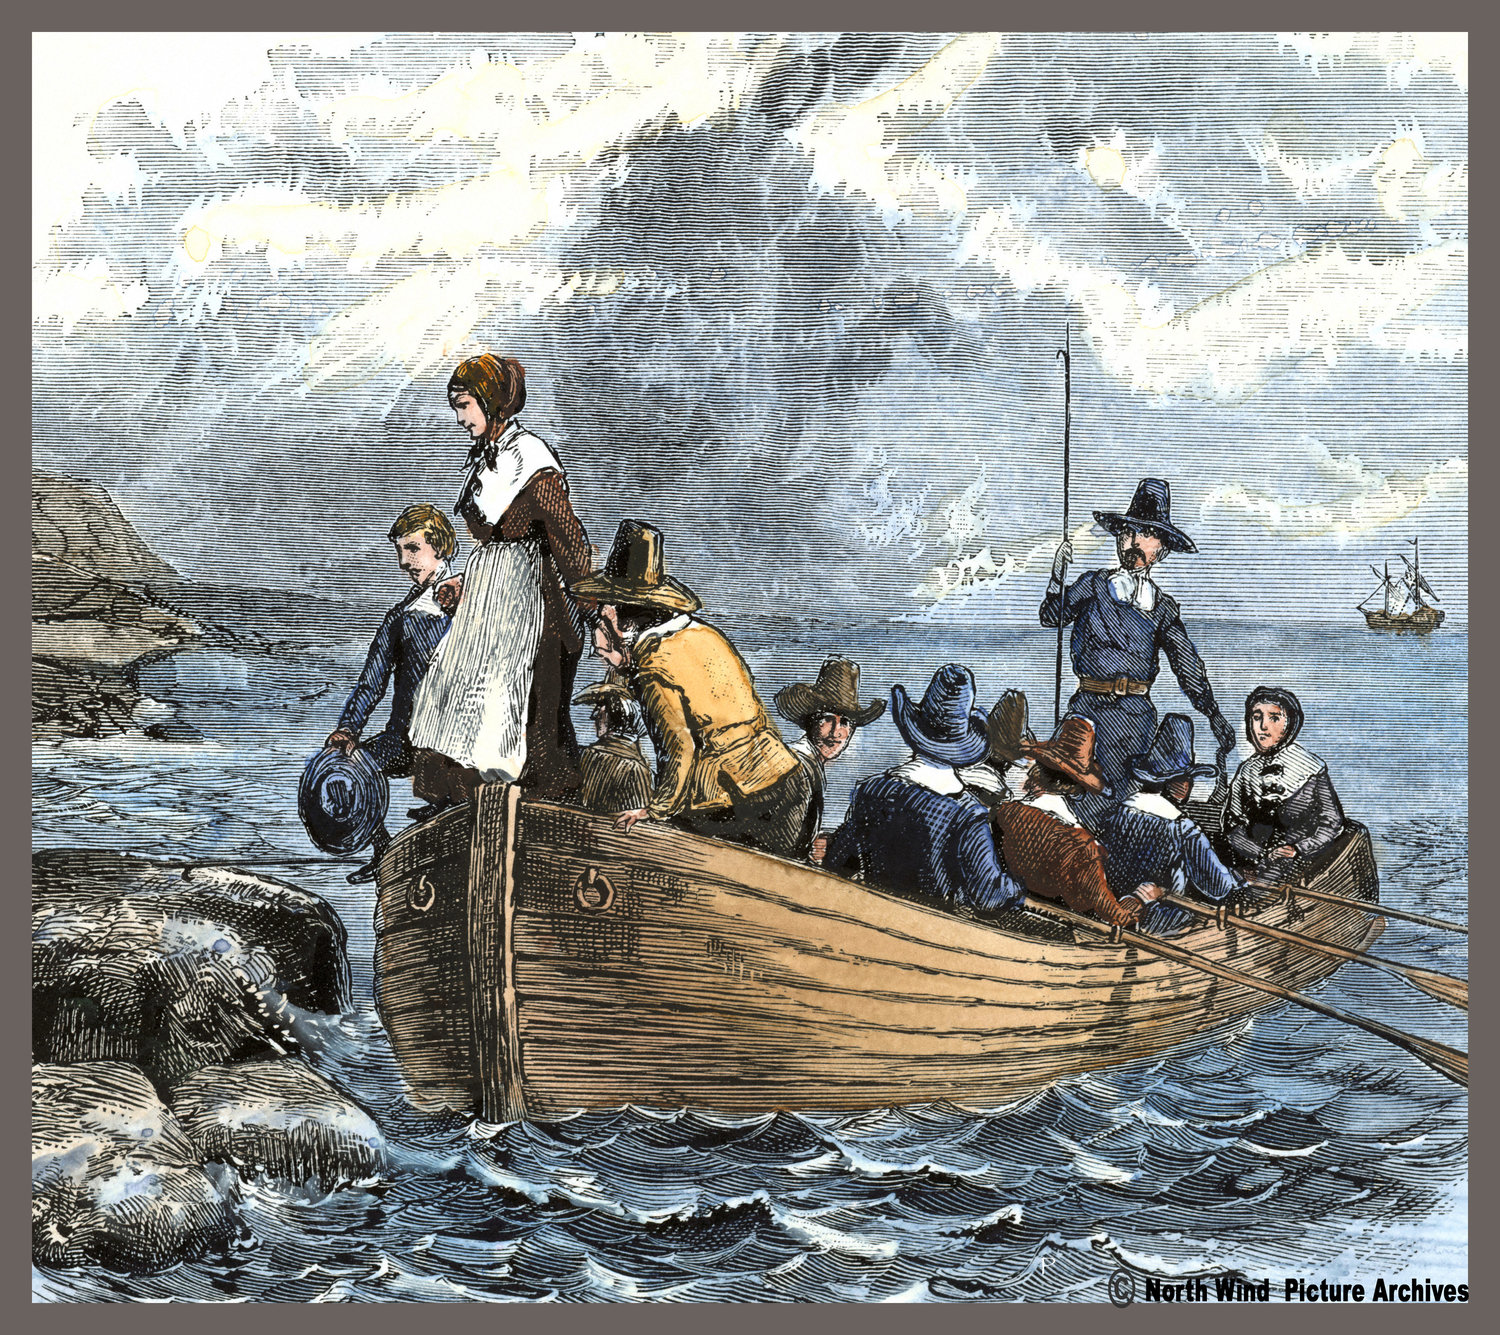 Первый пилигрим. Корабль Мэйфлауэр 1620. Мэйфлауэр корабль первых колонистов. Корабль Mayflower первые поселенцы в Америке. Пилигримы на корабле Мэйфлауэр.